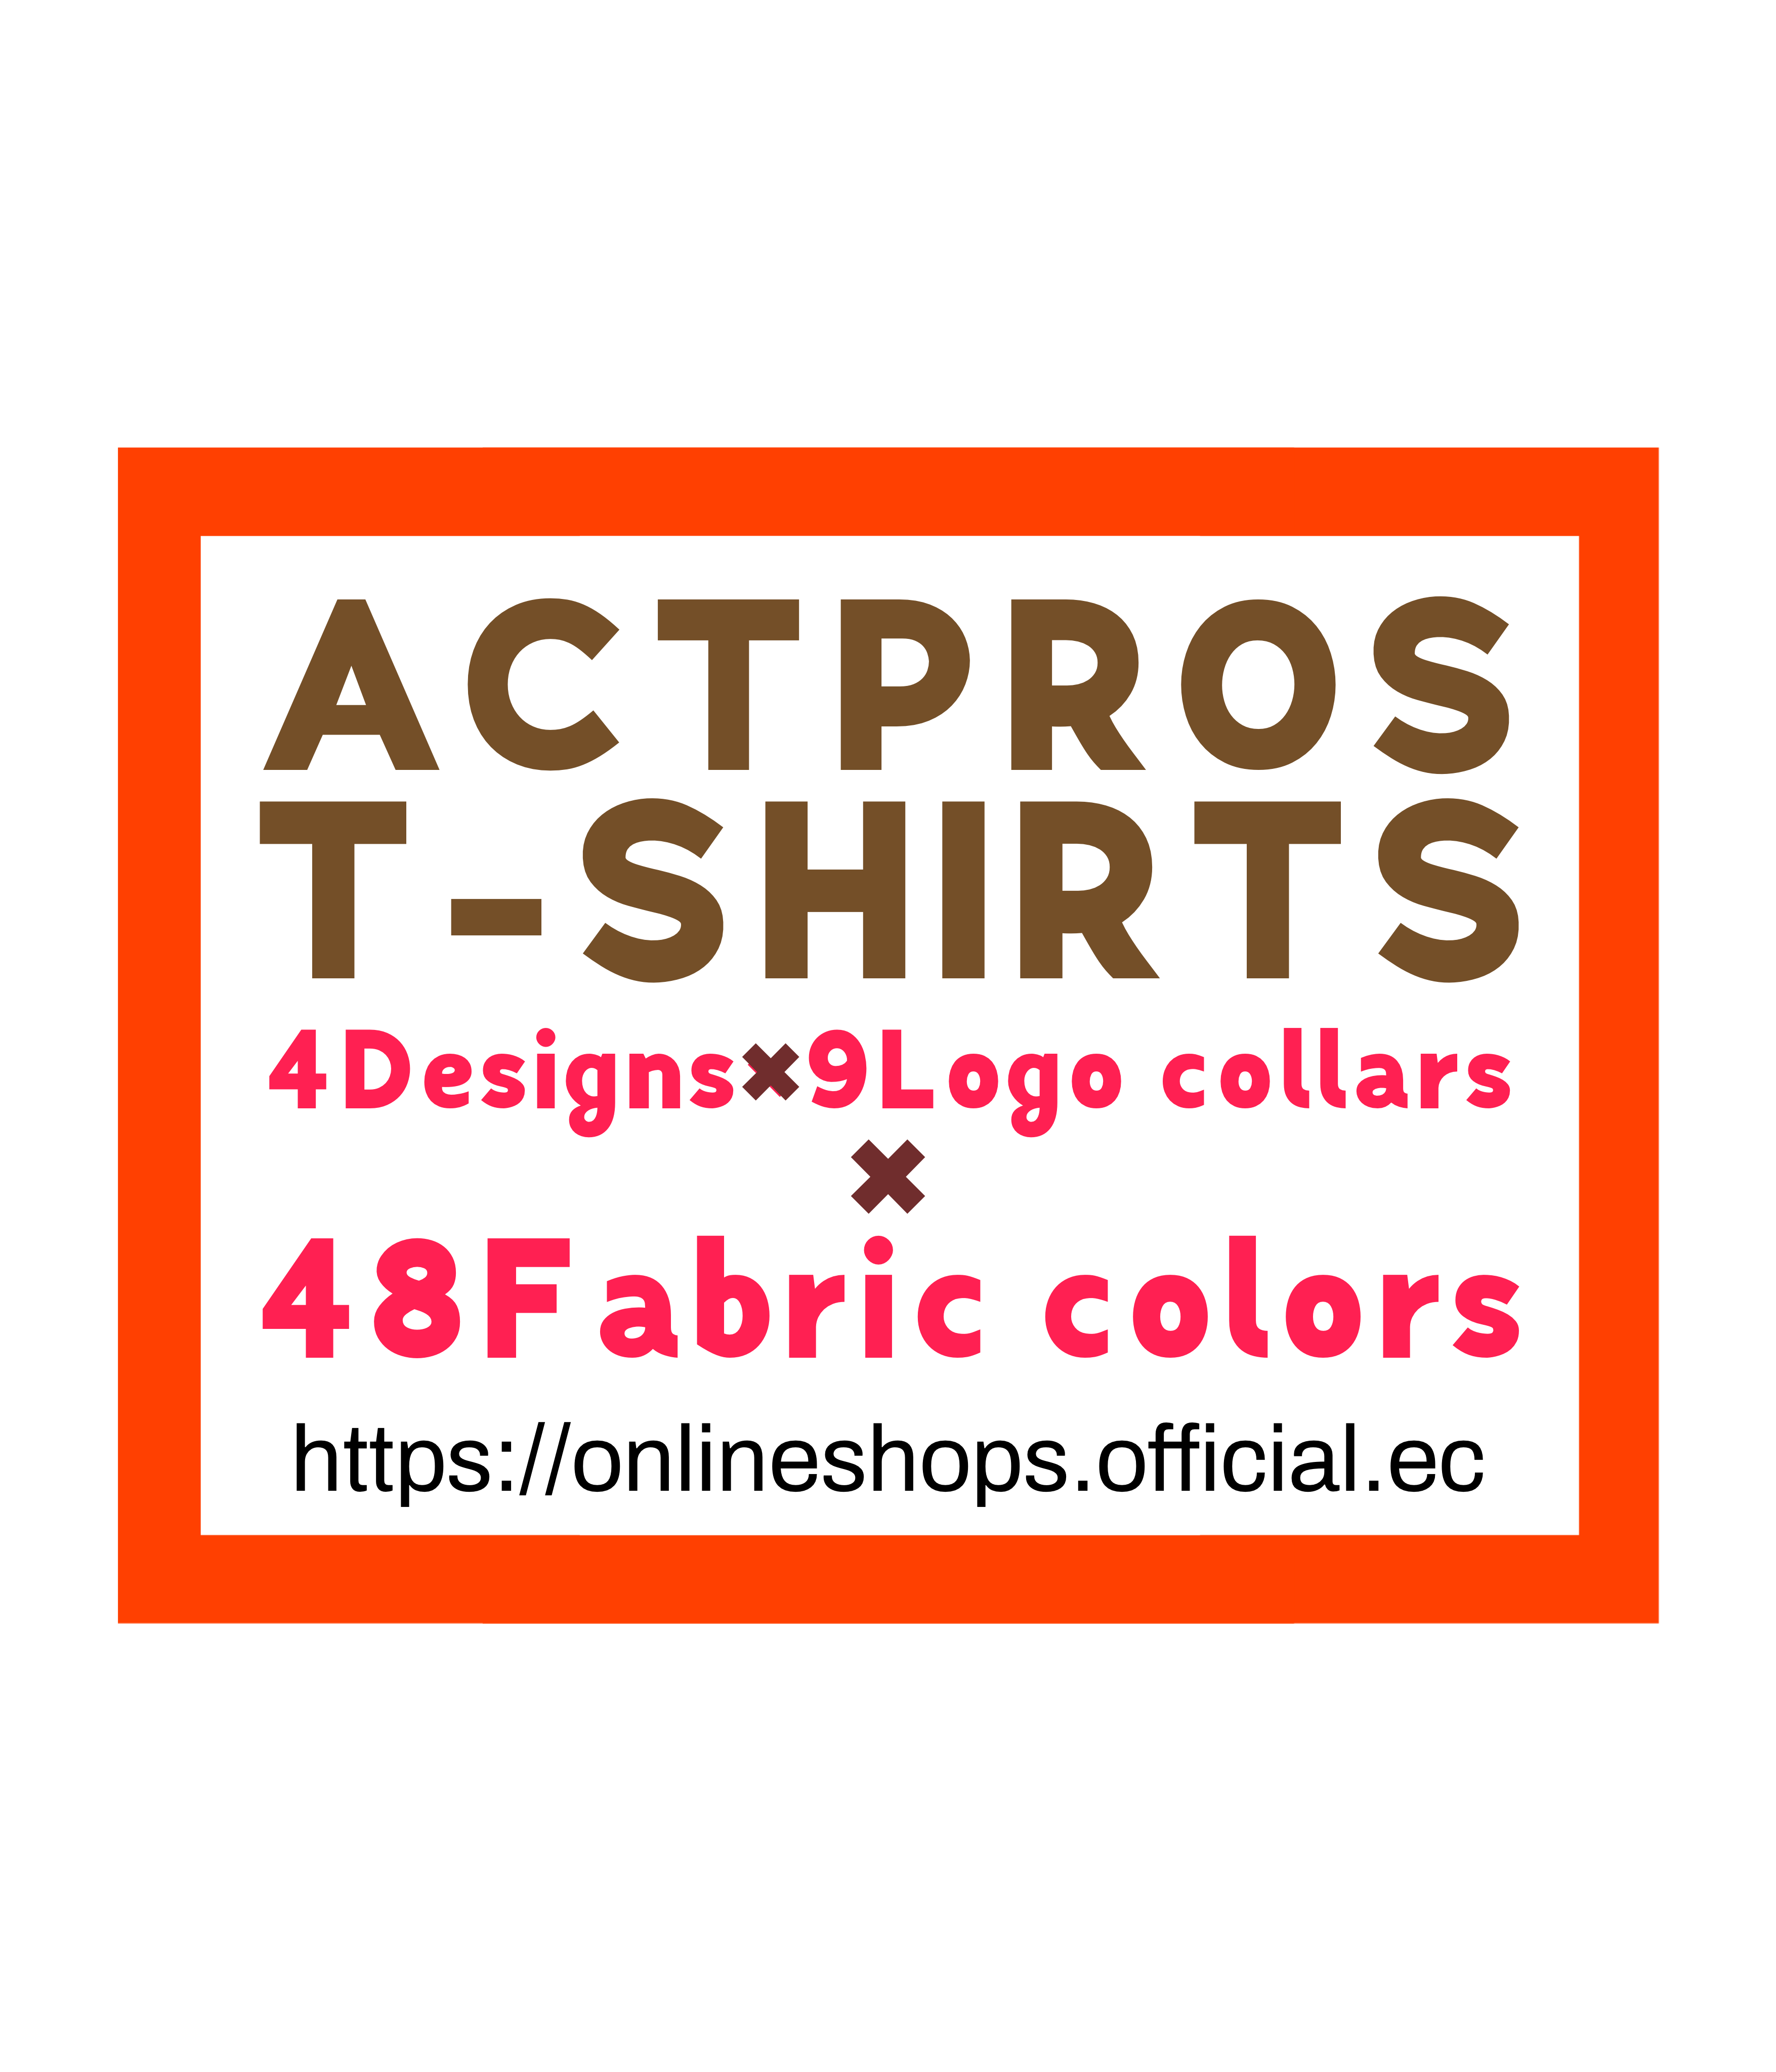 『ACTPROS オリジナルTシャツ』の販売について